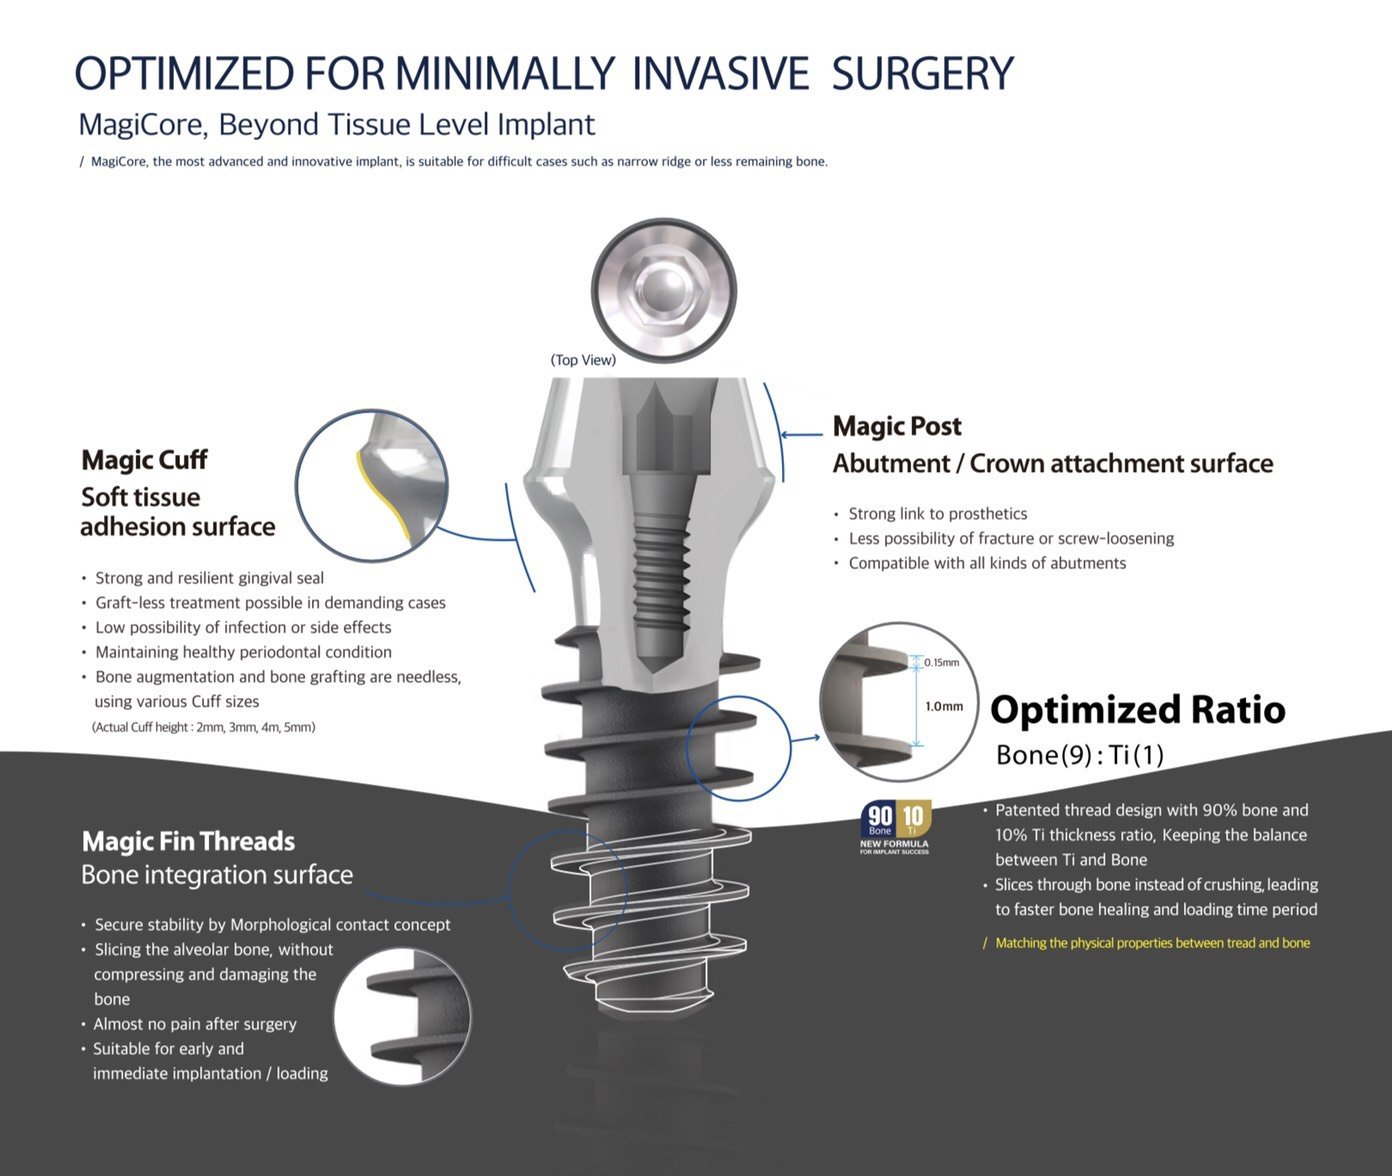 MagiCore Optimized for Minimally Invasive Implantation